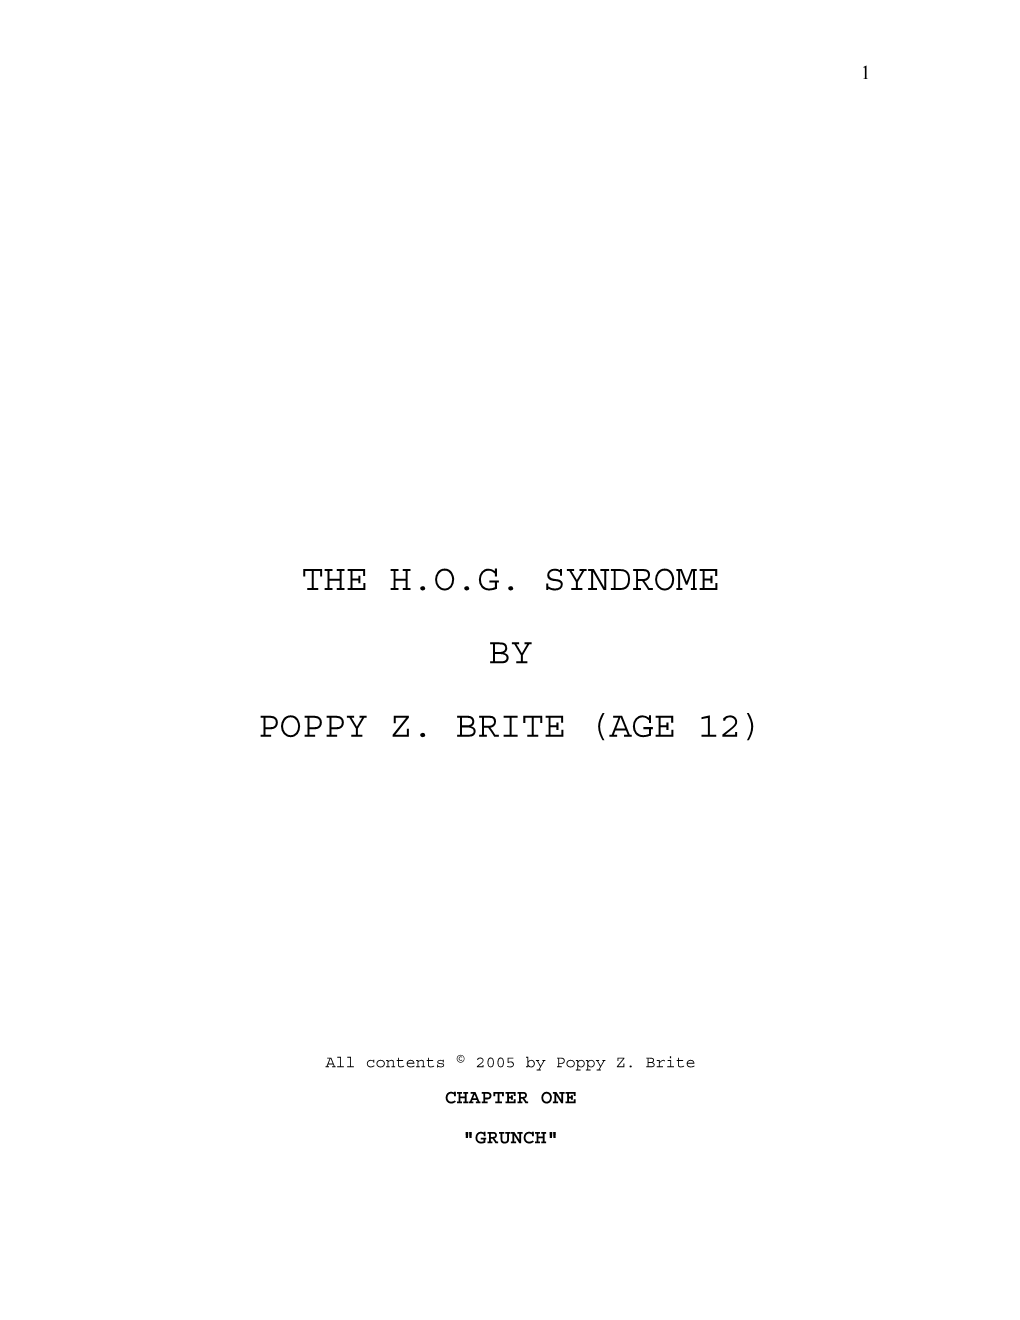 The H.O.G. Syndrome by Poppy Z. Brite (Age